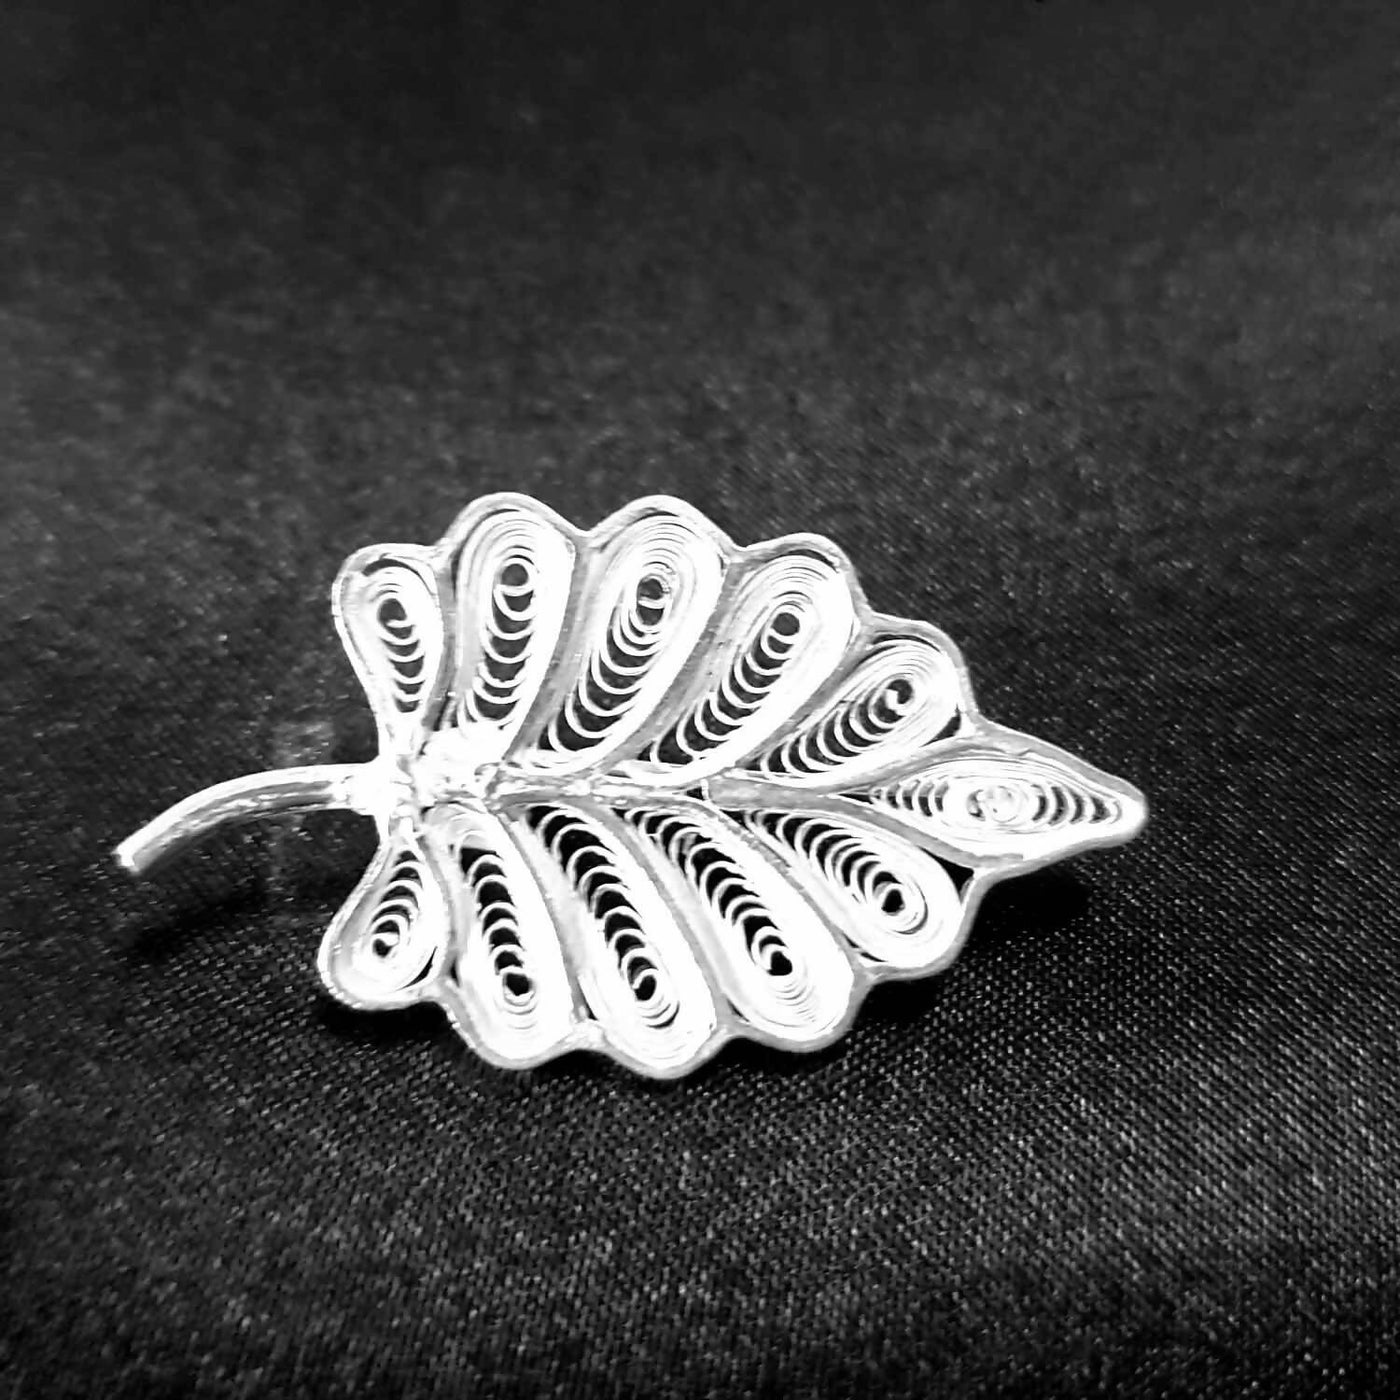 Leaf shaped Silver Filigree Brooch SJ-Brooch-995 - Fashion & Lifestyle - 1